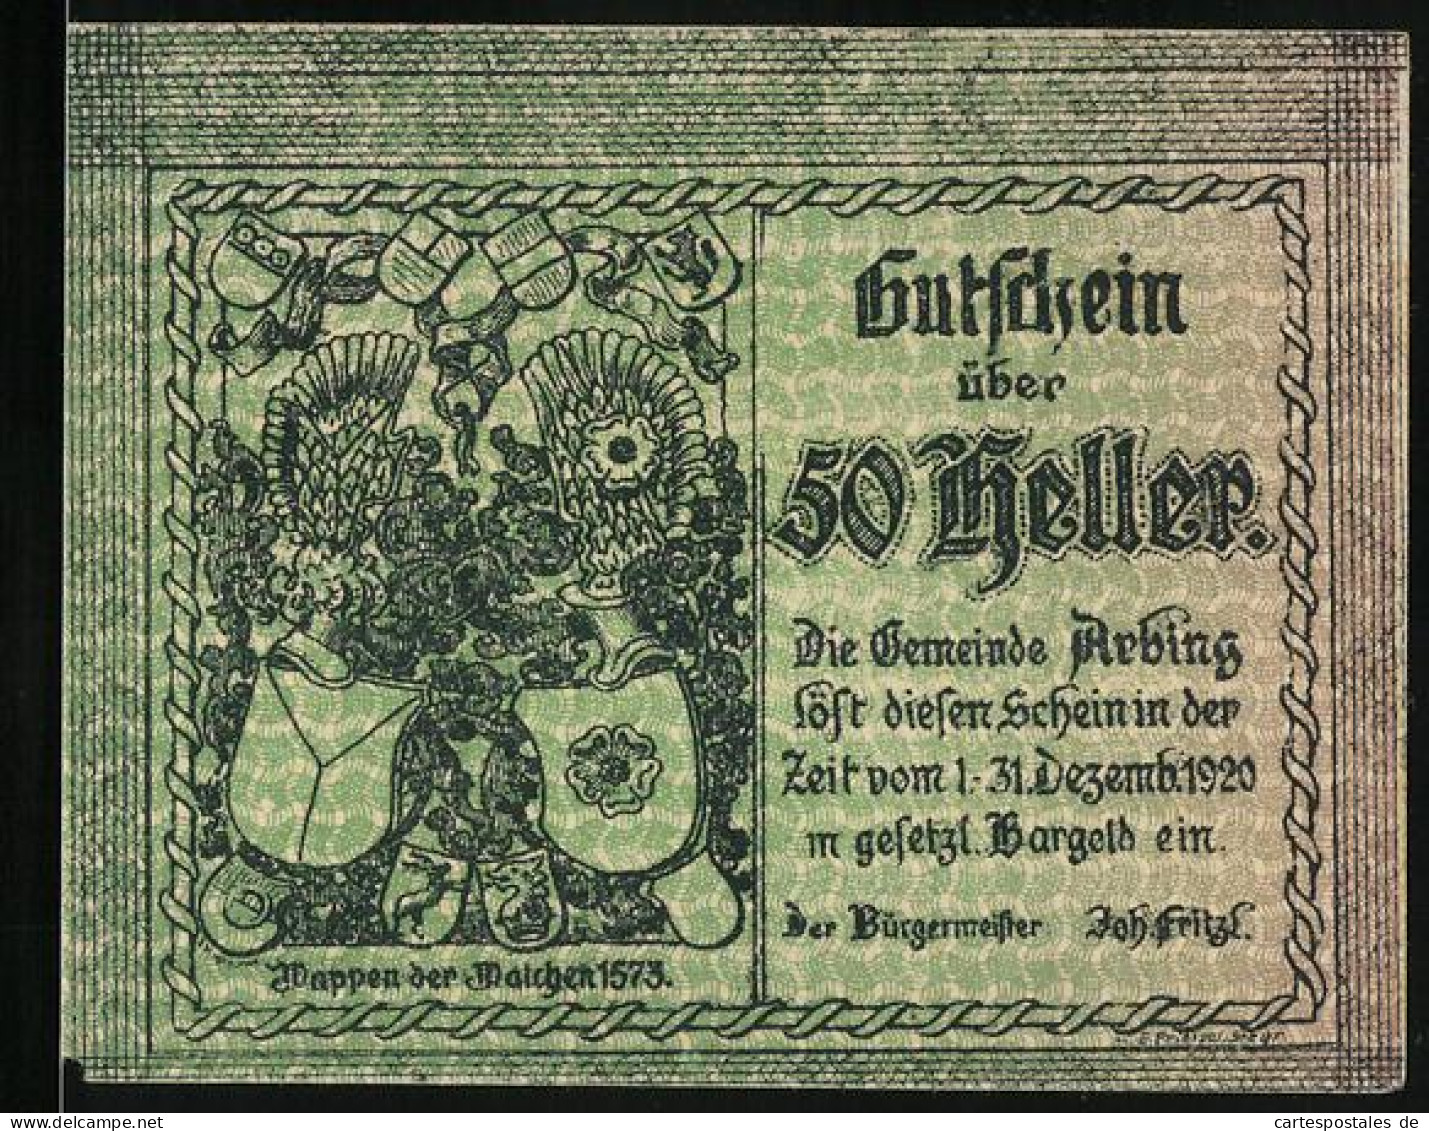 Notgeld Arbing 1920, 50 Heller, Wappen Der Walchen 1573, Alt-Arbing 1672  - Autriche